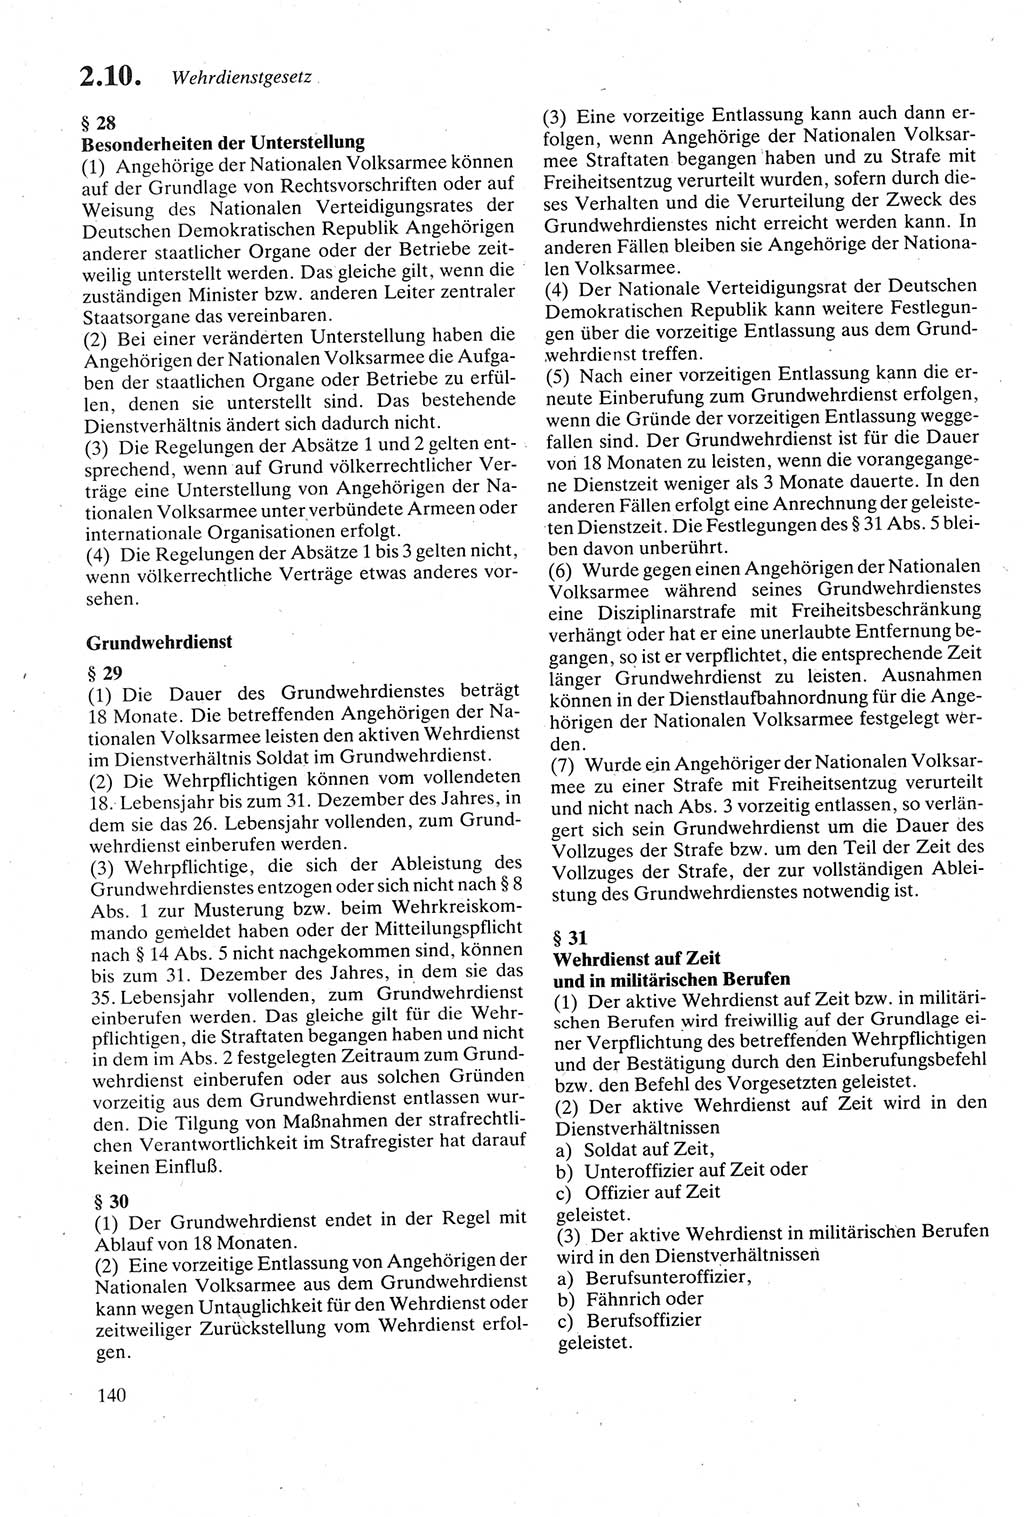 Strafgesetzbuch (StGB) der Deutschen Demokratischen Republik (DDR) sowie angrenzende Gesetze und Bestimmungen 1979, Seite 140 (StGB DDR Ges. Best. 1979, S. 140)